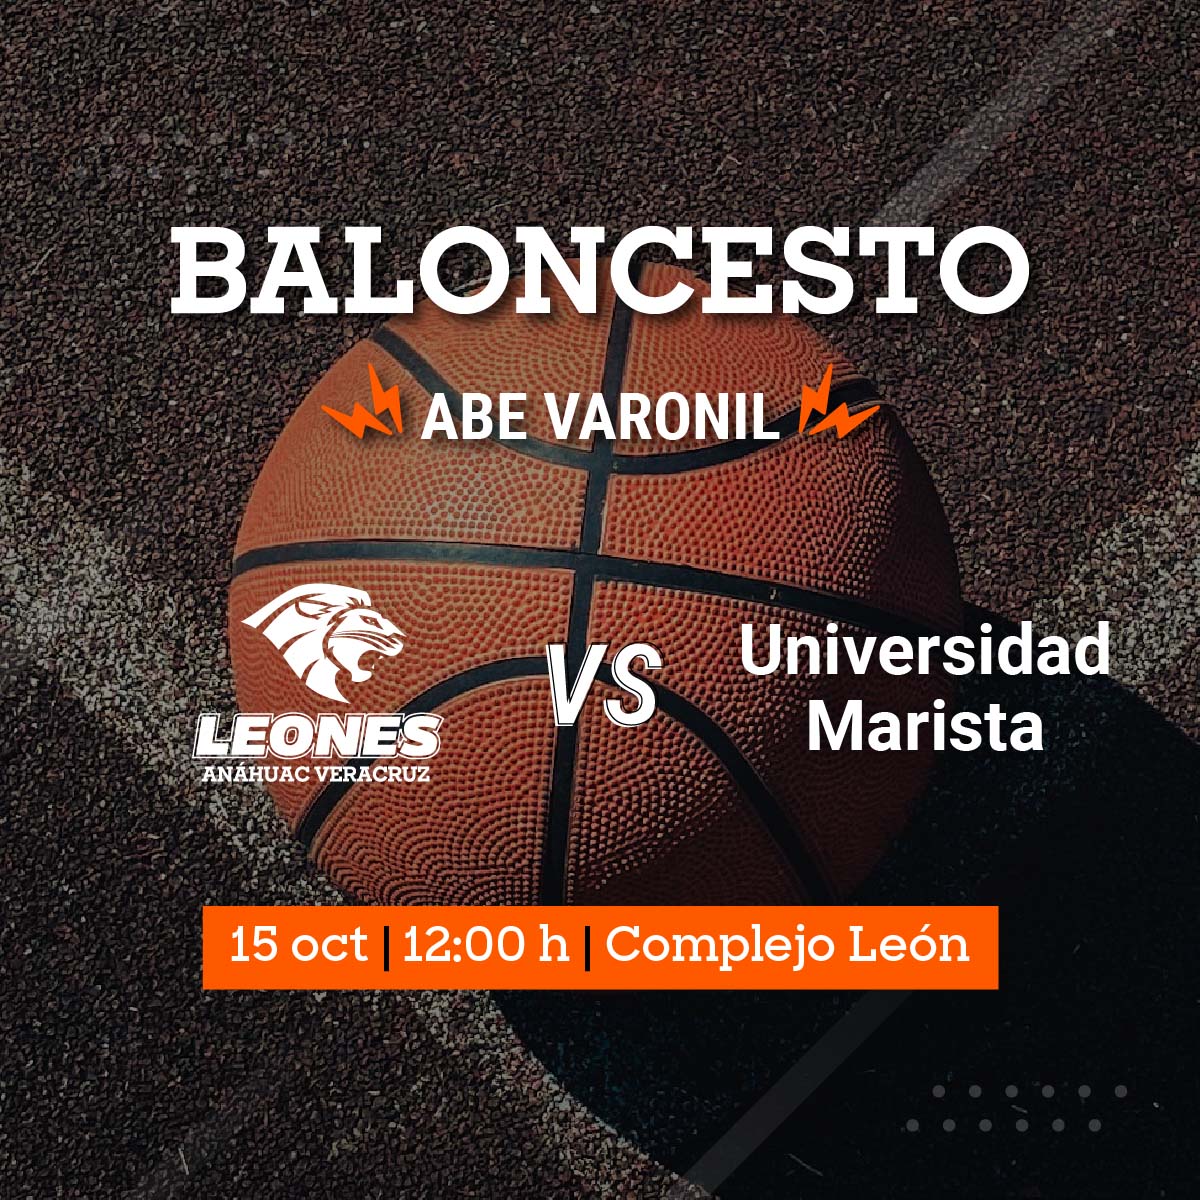 Baloncesto Varonil ABE: Leones vs Universidad Marista